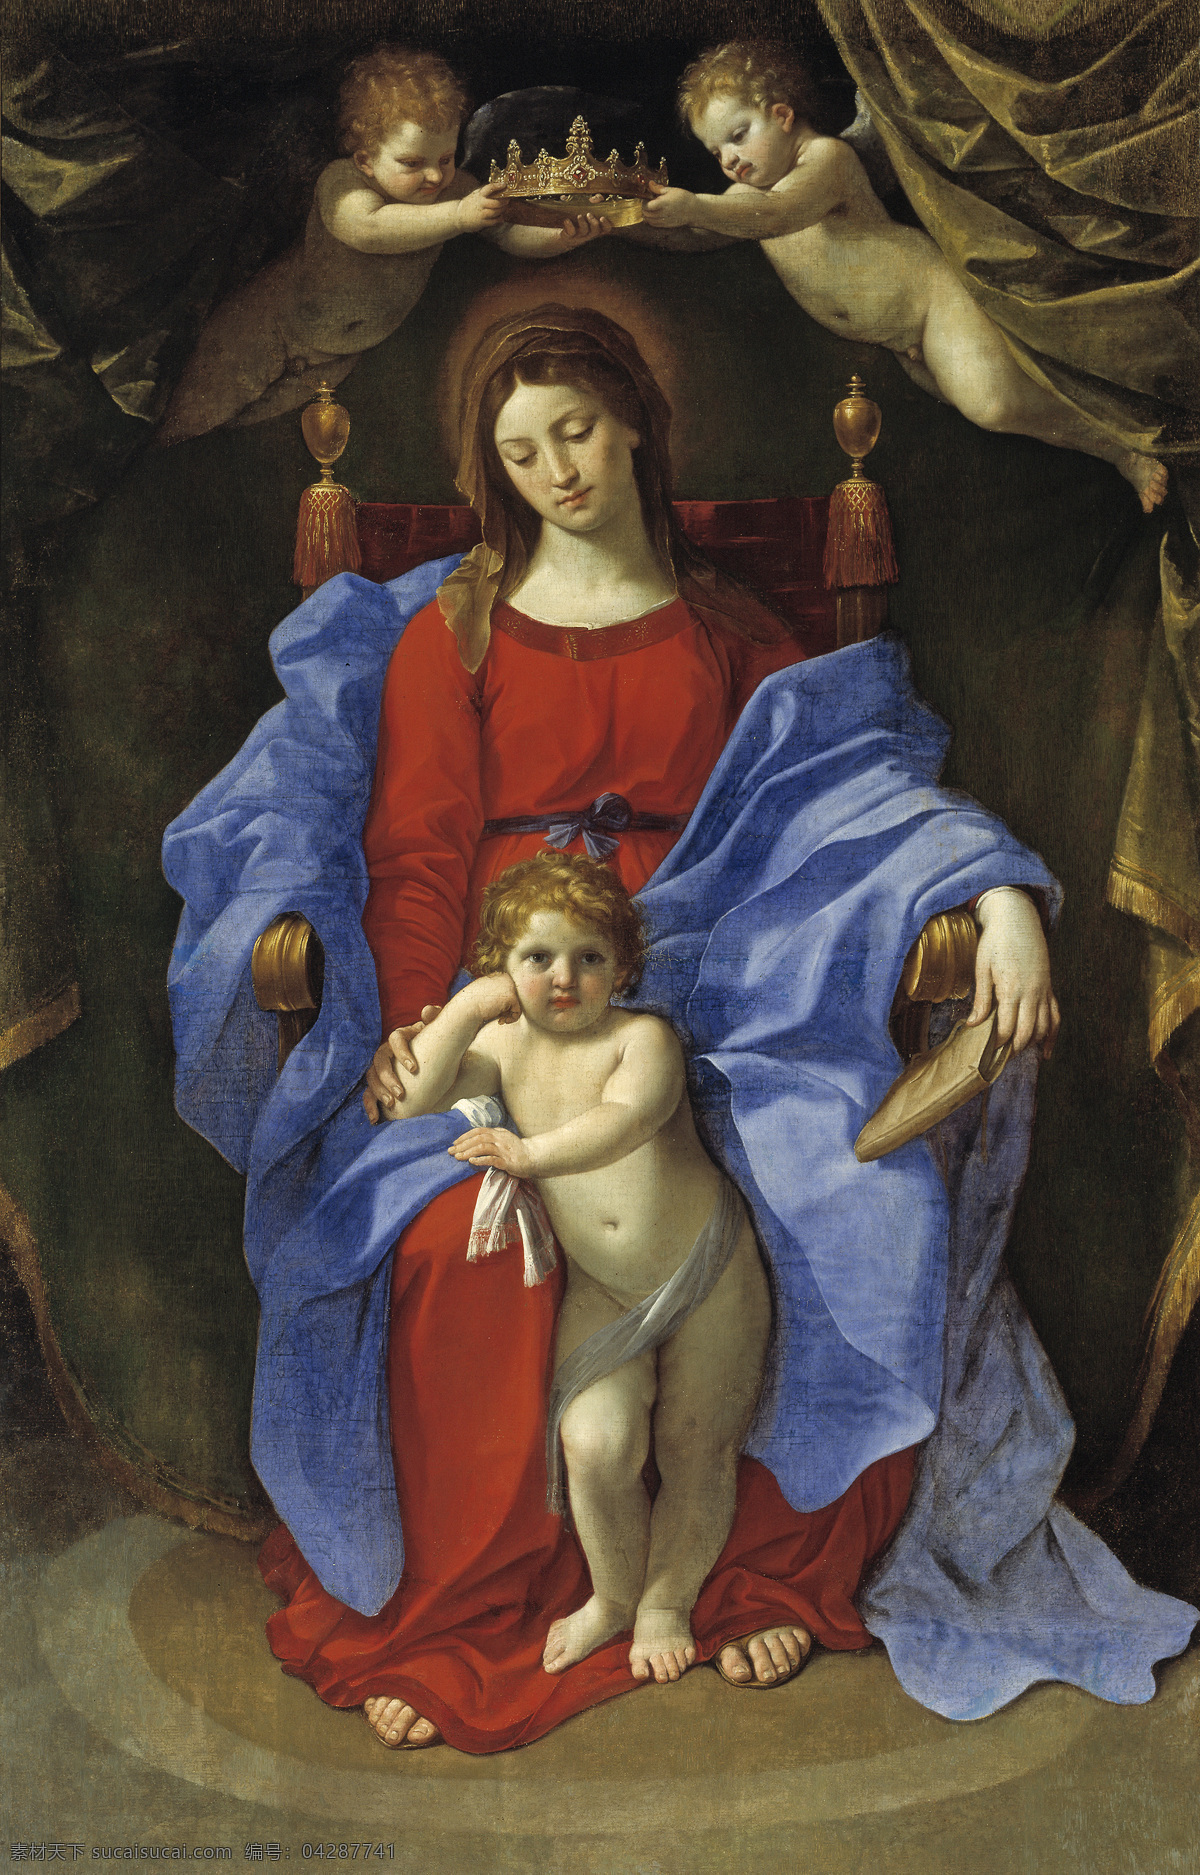 圣母 玛丽亚 油画 装饰画 绘画艺术 人物绘画 人物肖像画 人物油画写生 美女肖像画 宗教油画 圣母玛丽亚 书画文字 文化艺术